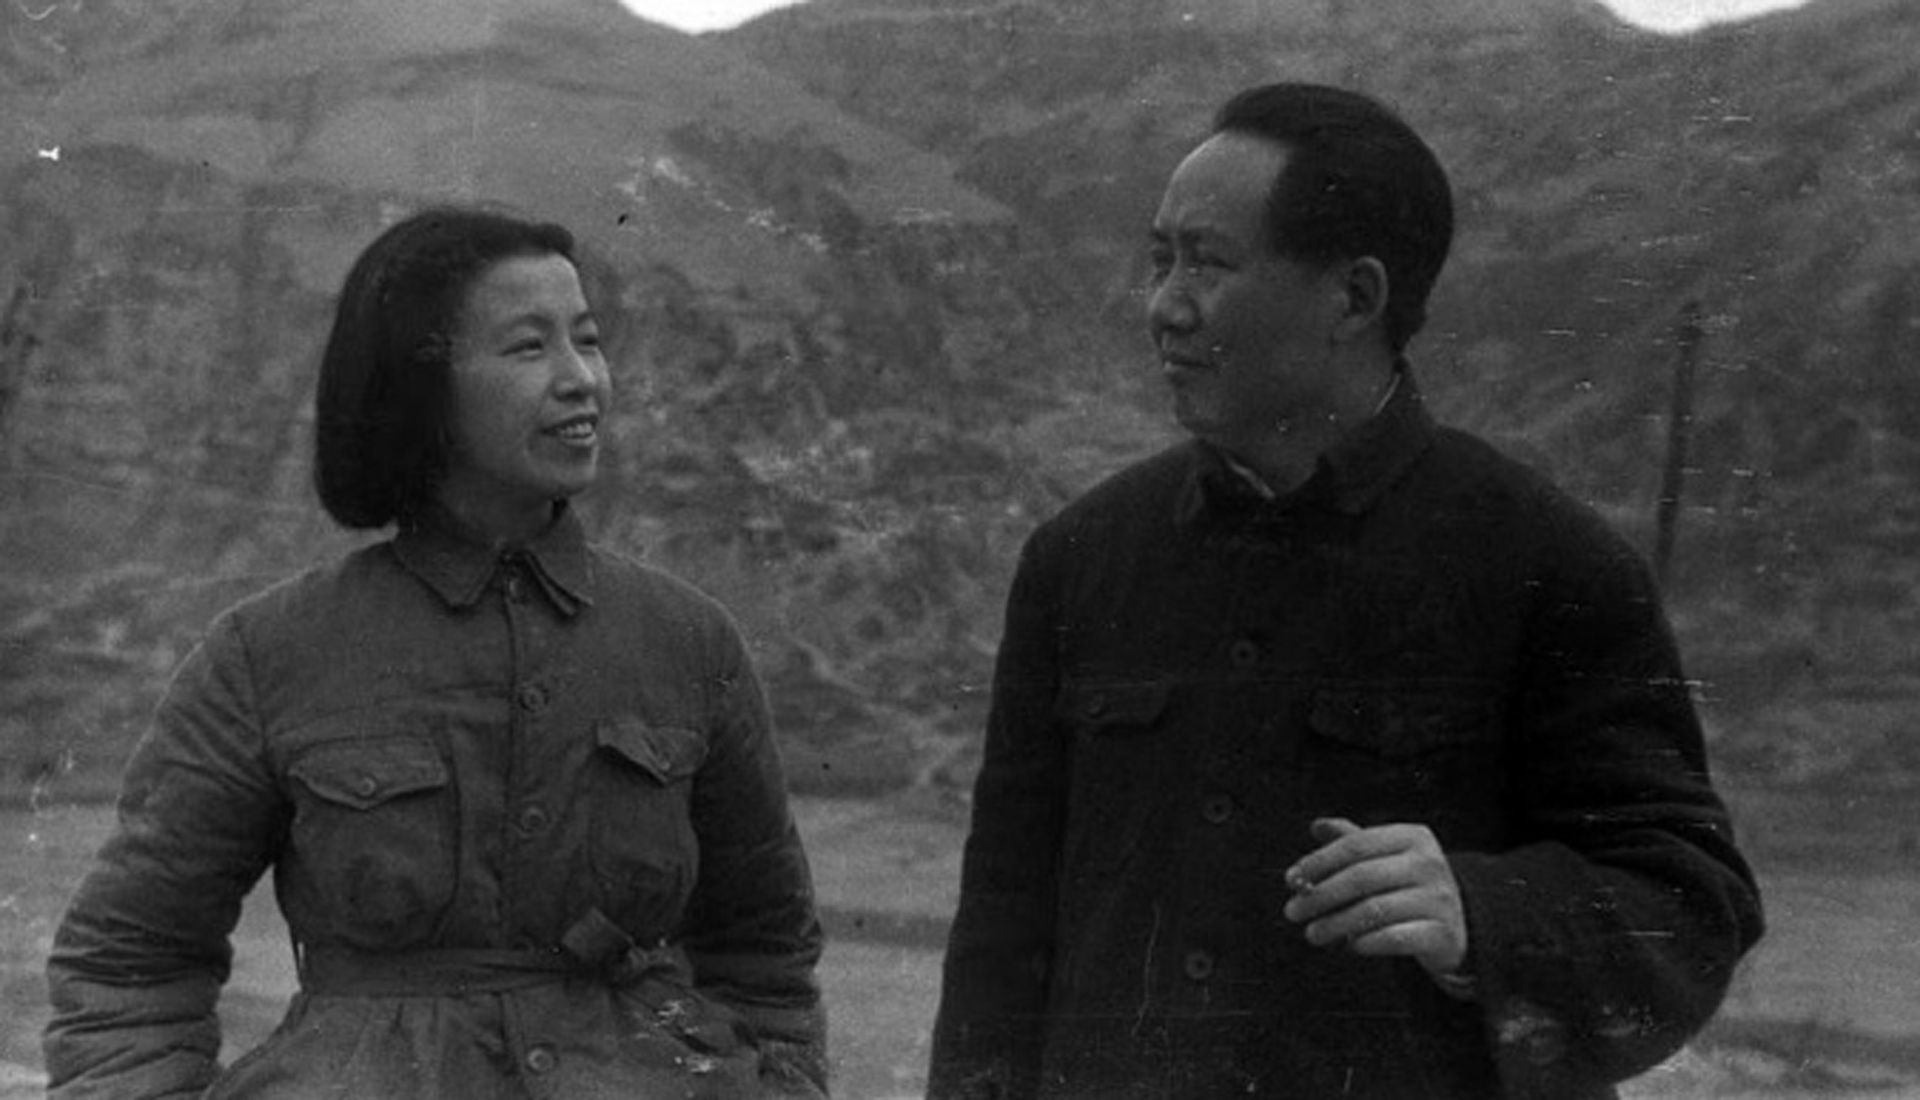 1944年毛泽东与江青